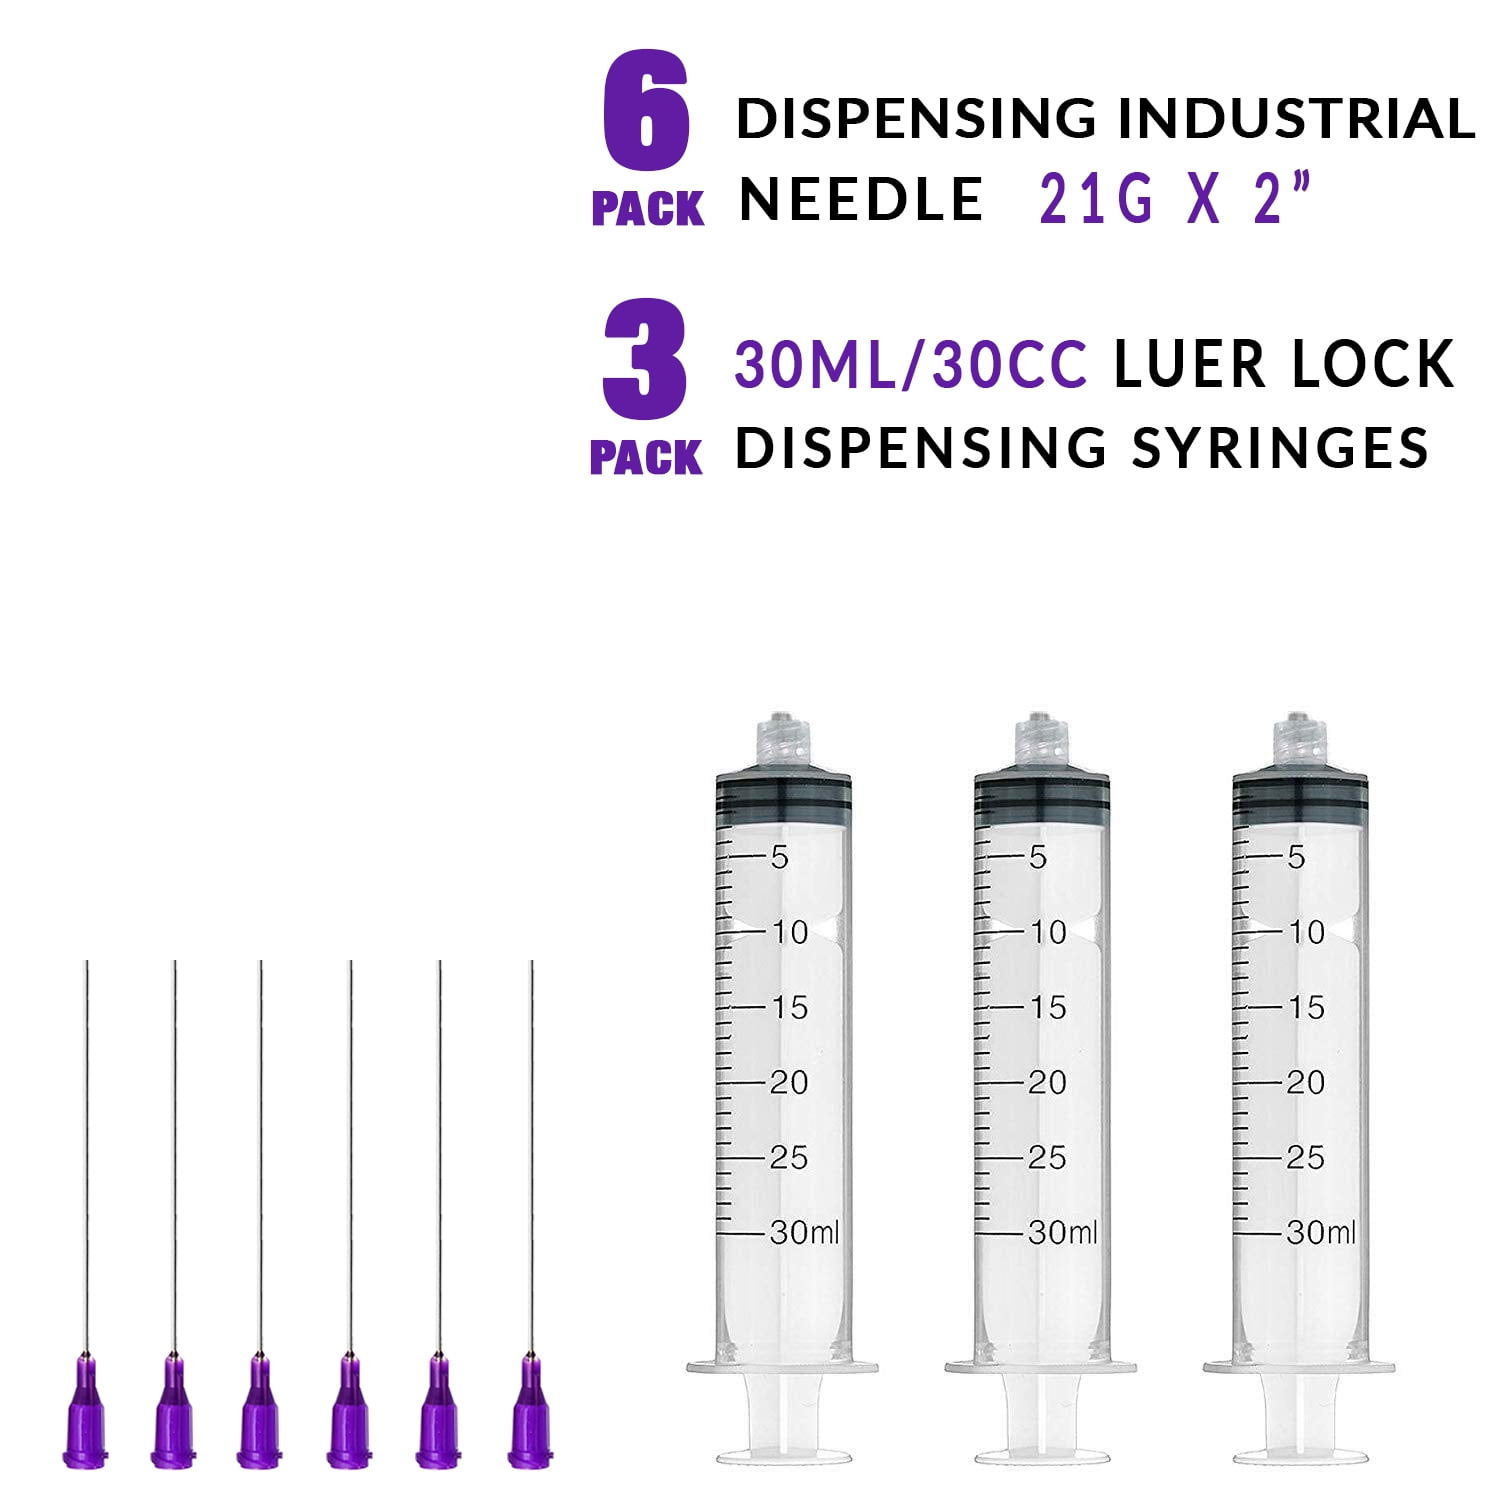 20g, 1.5 Needle - 5cc/5ml Syringe